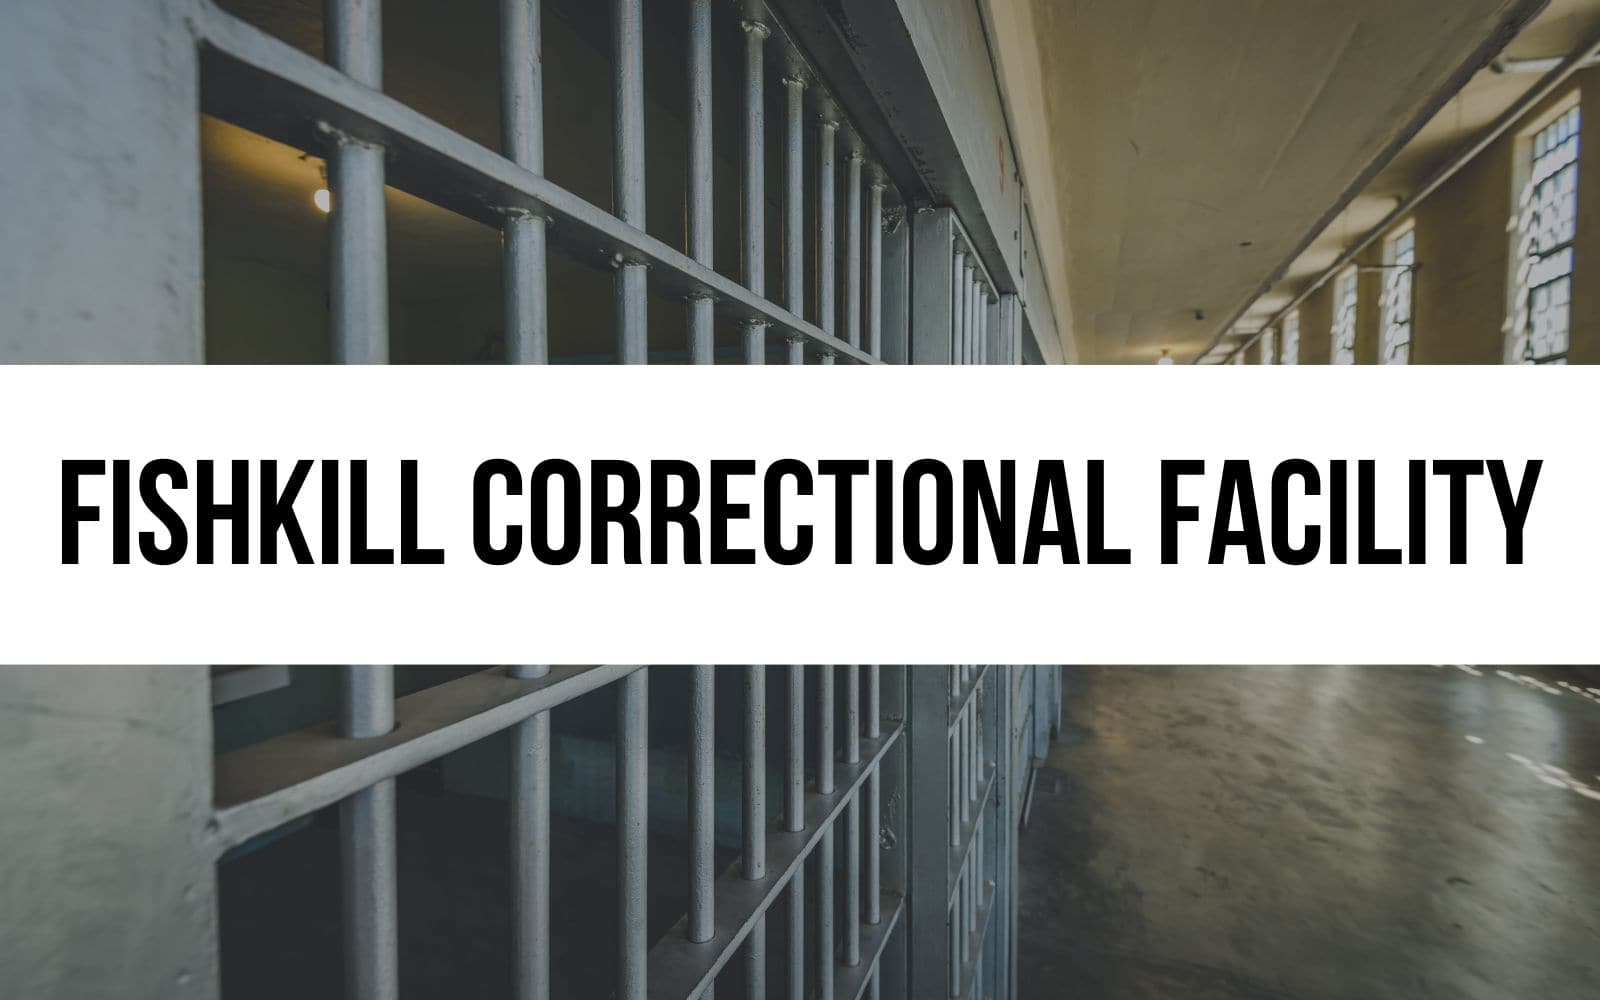 Fishkill Correctional Facility